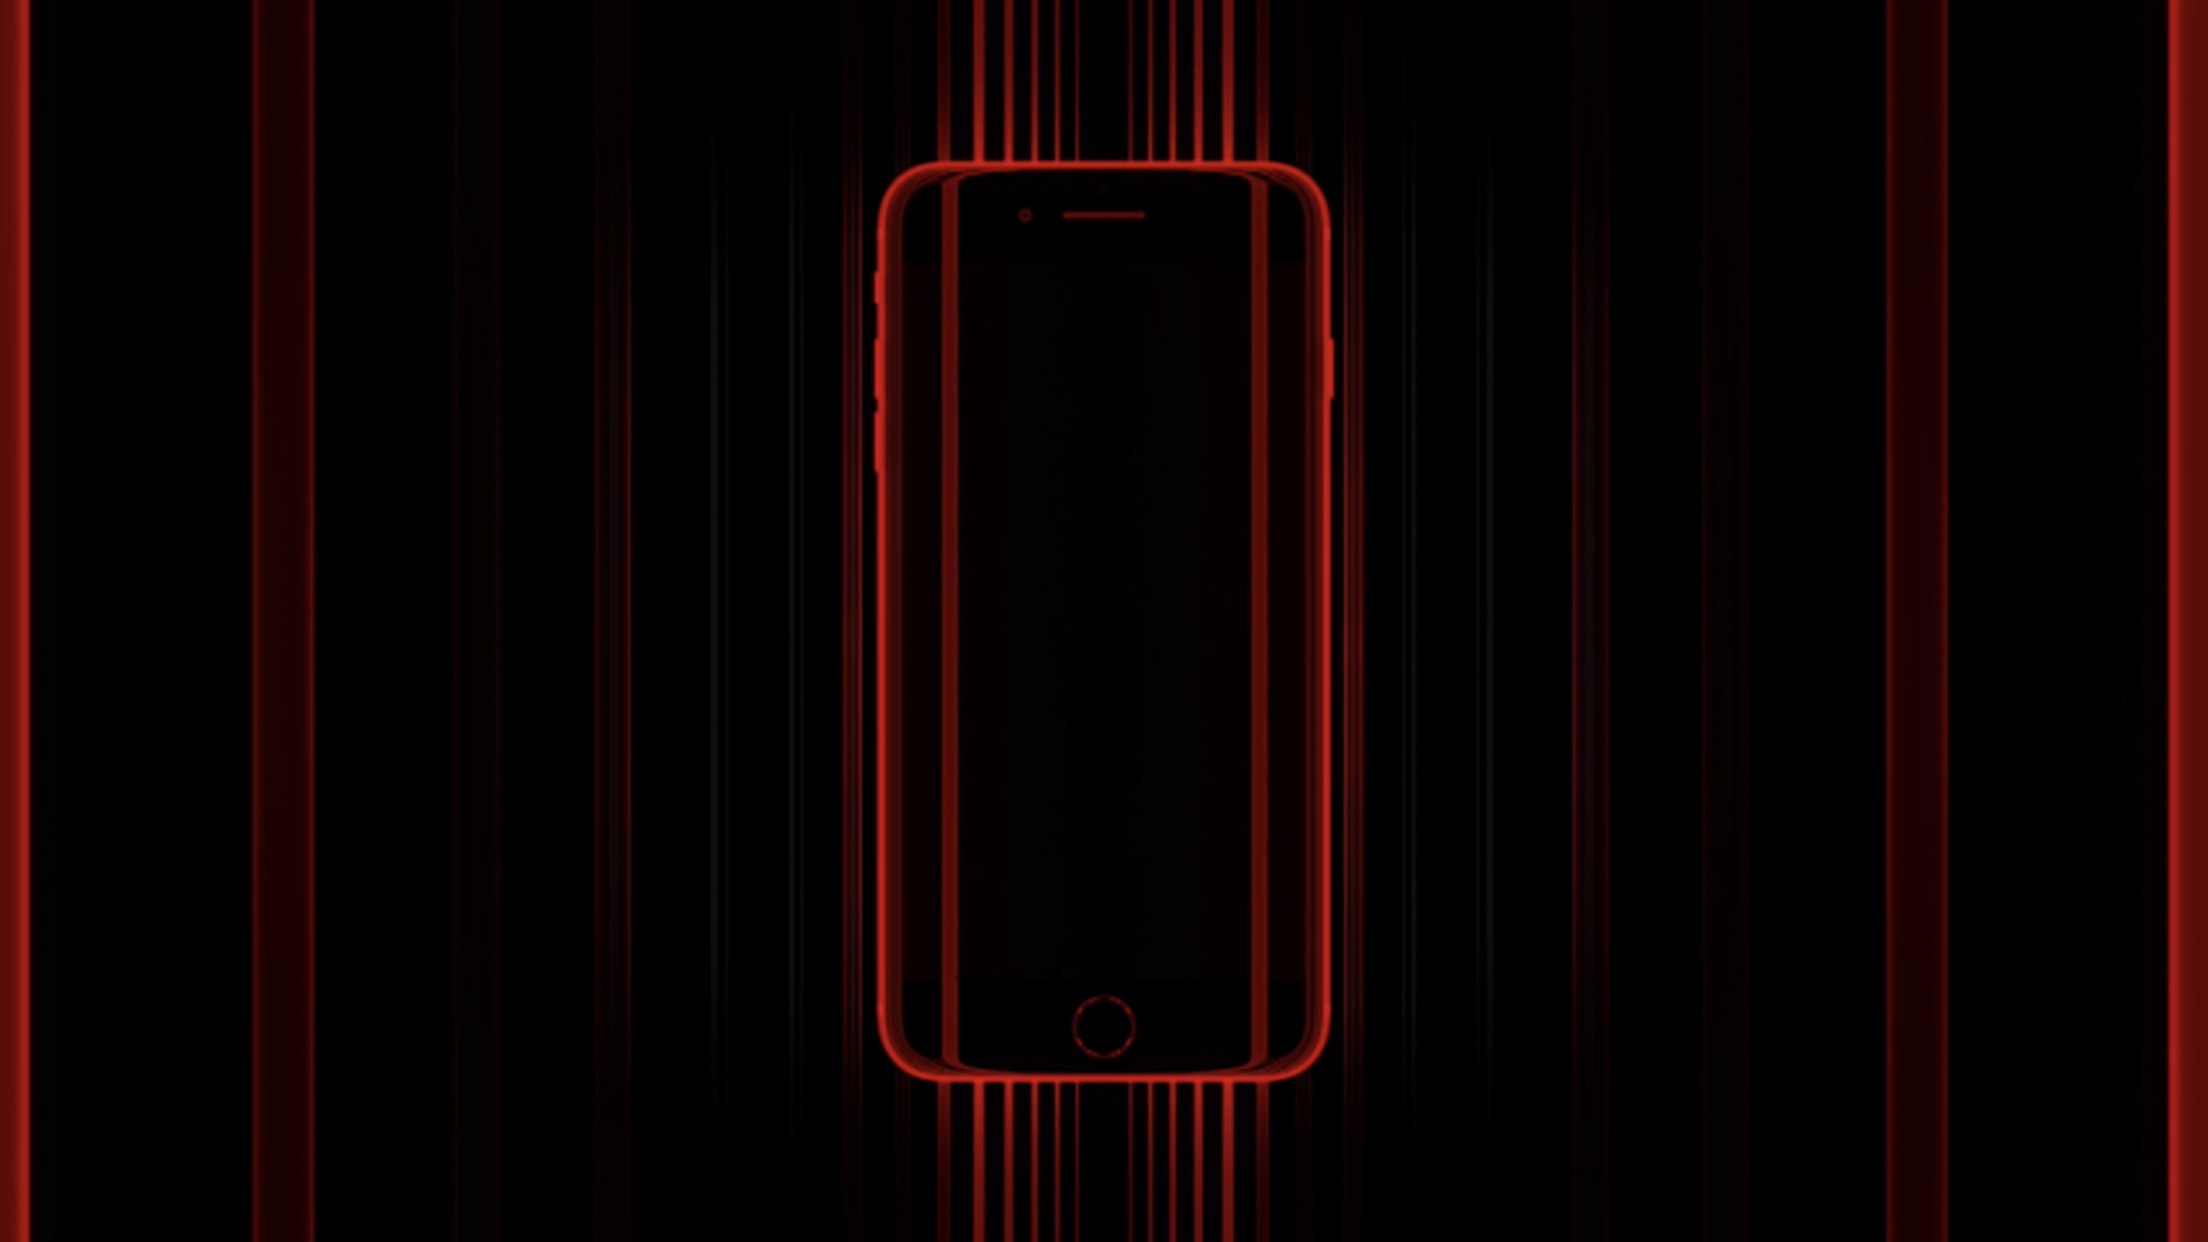 Apple、見れば欲しくなる「iPhone 8 (PRODUCT)RED」の超絶クールなCMを公開